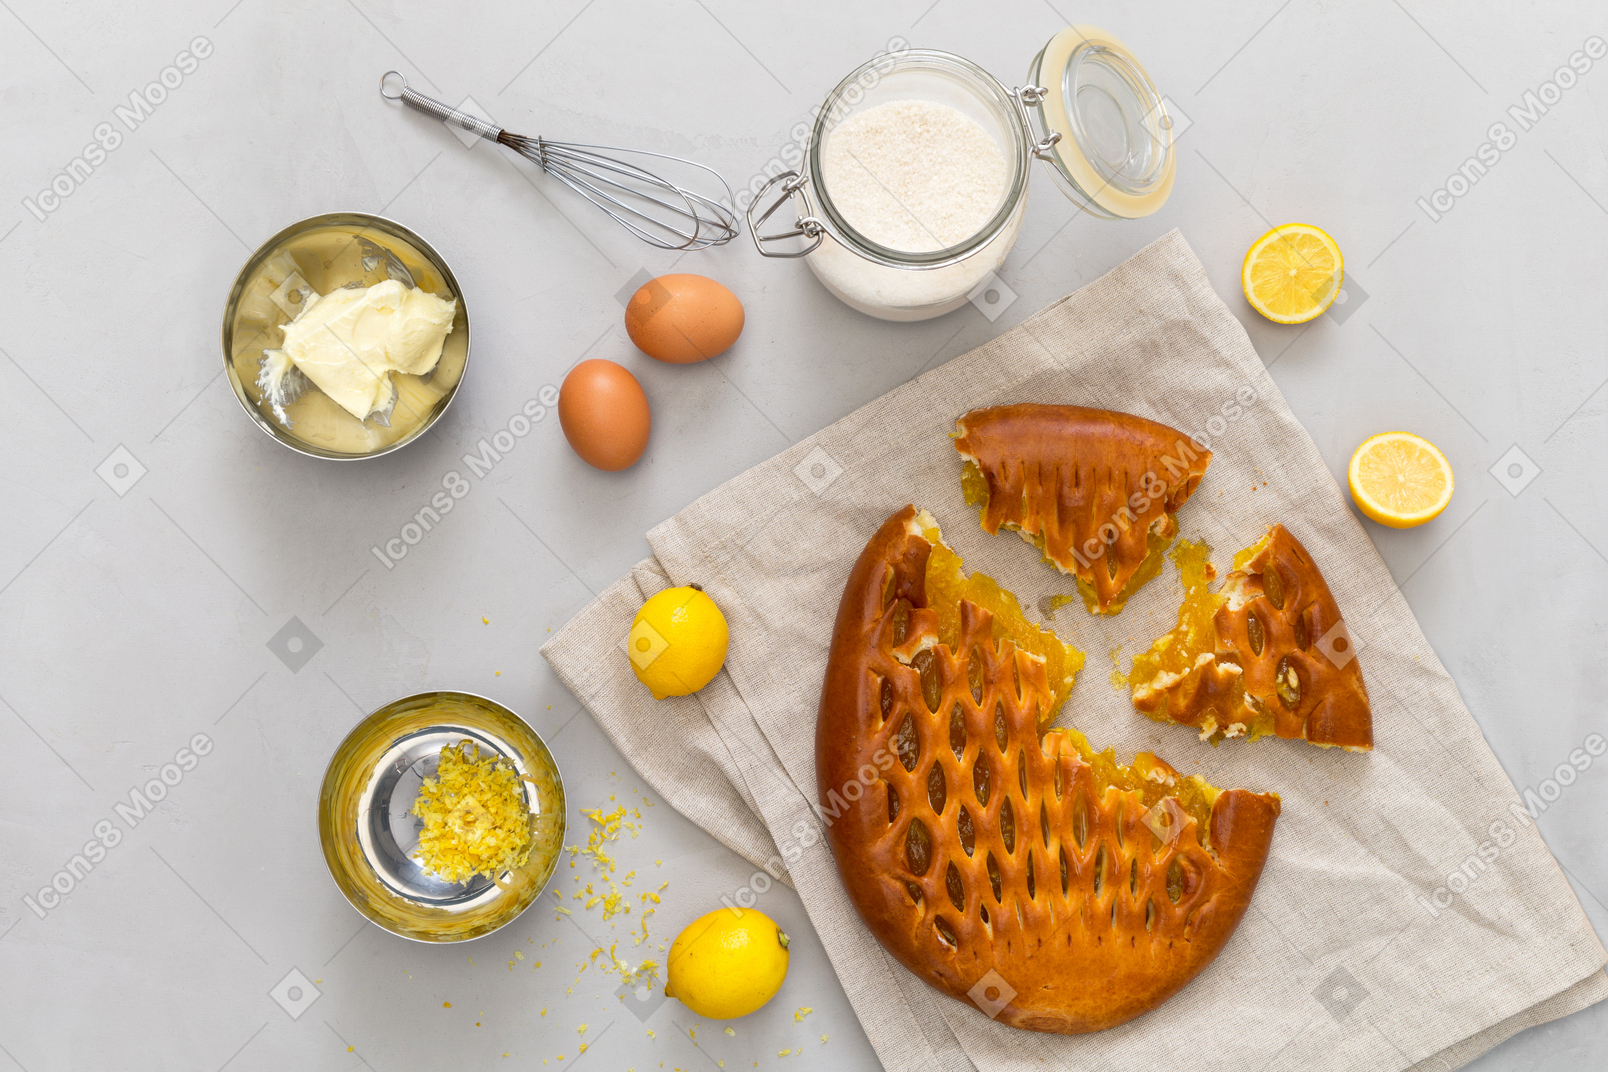 Limones, ralladura de limón, tarro con azúcar, mantequilla, huevos y pastel de limón.